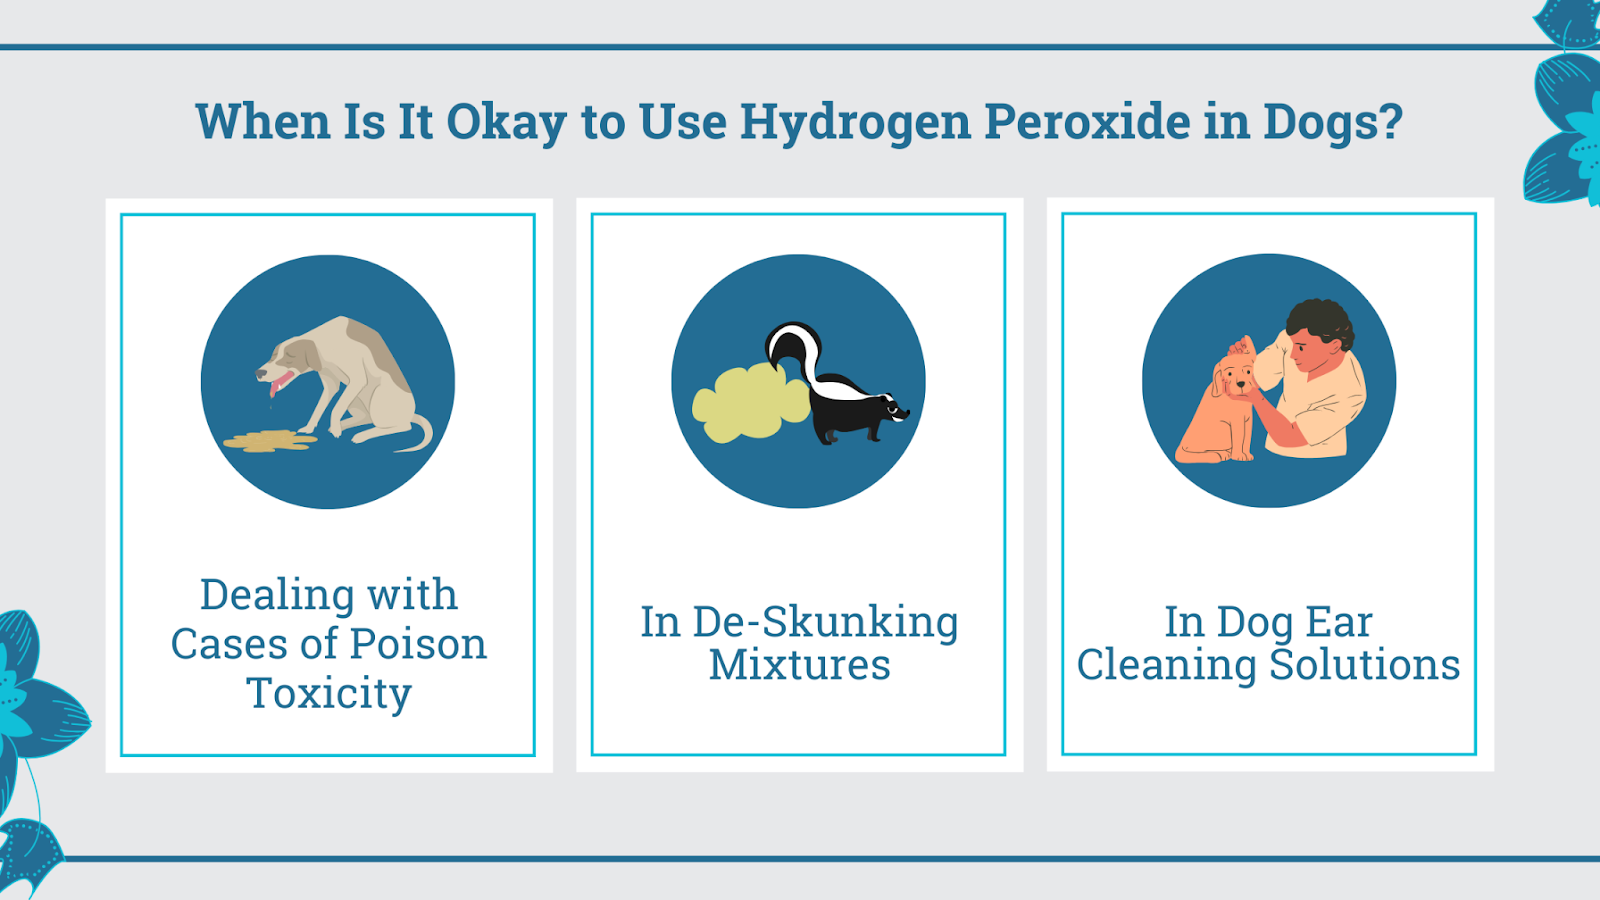 When is it okay to use hydrogen peroxide in dogs